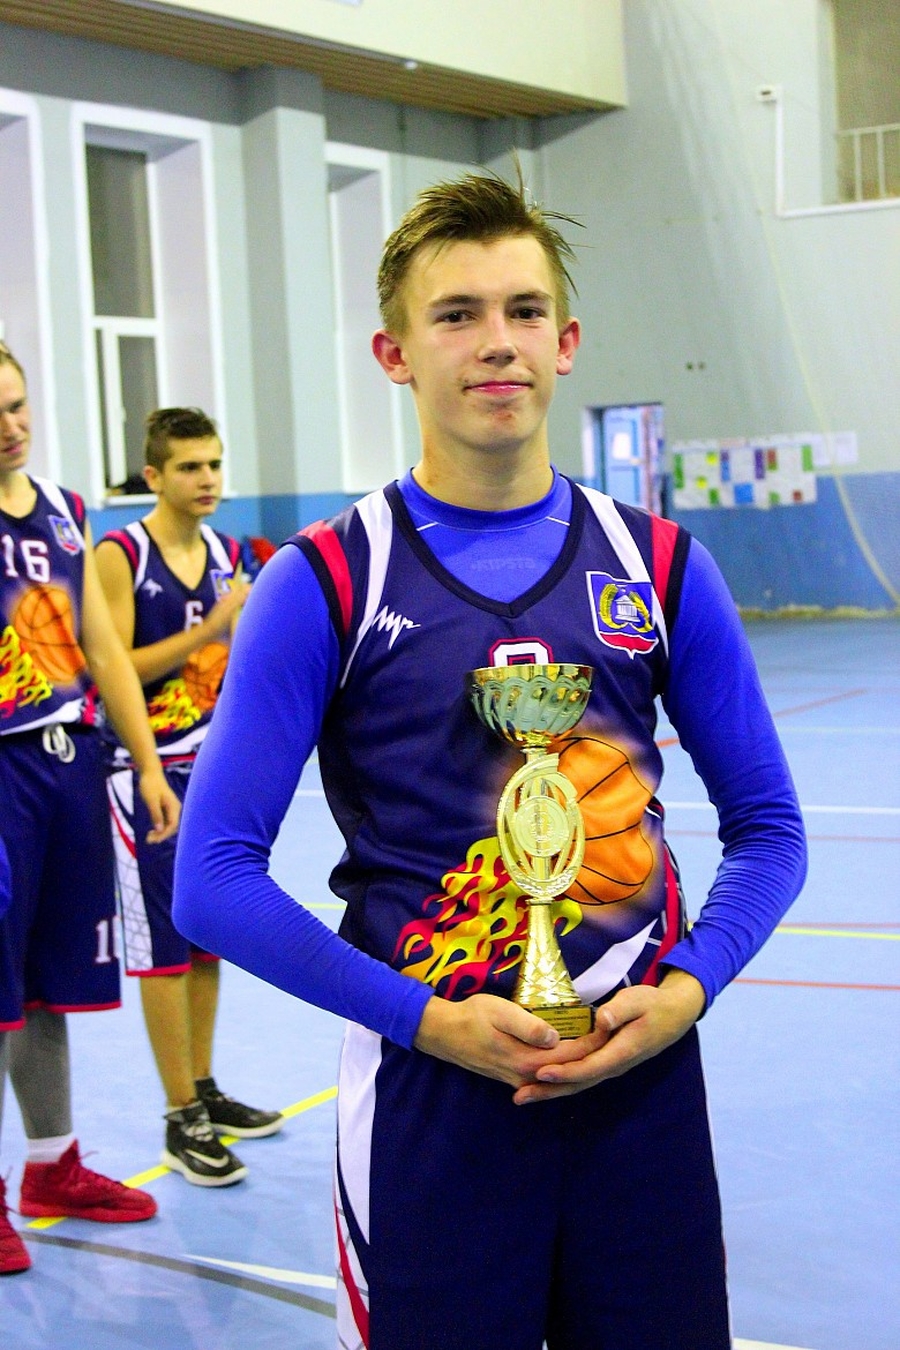 Баскетболисты Гатчинского района - победители Первенства Ленинградской области